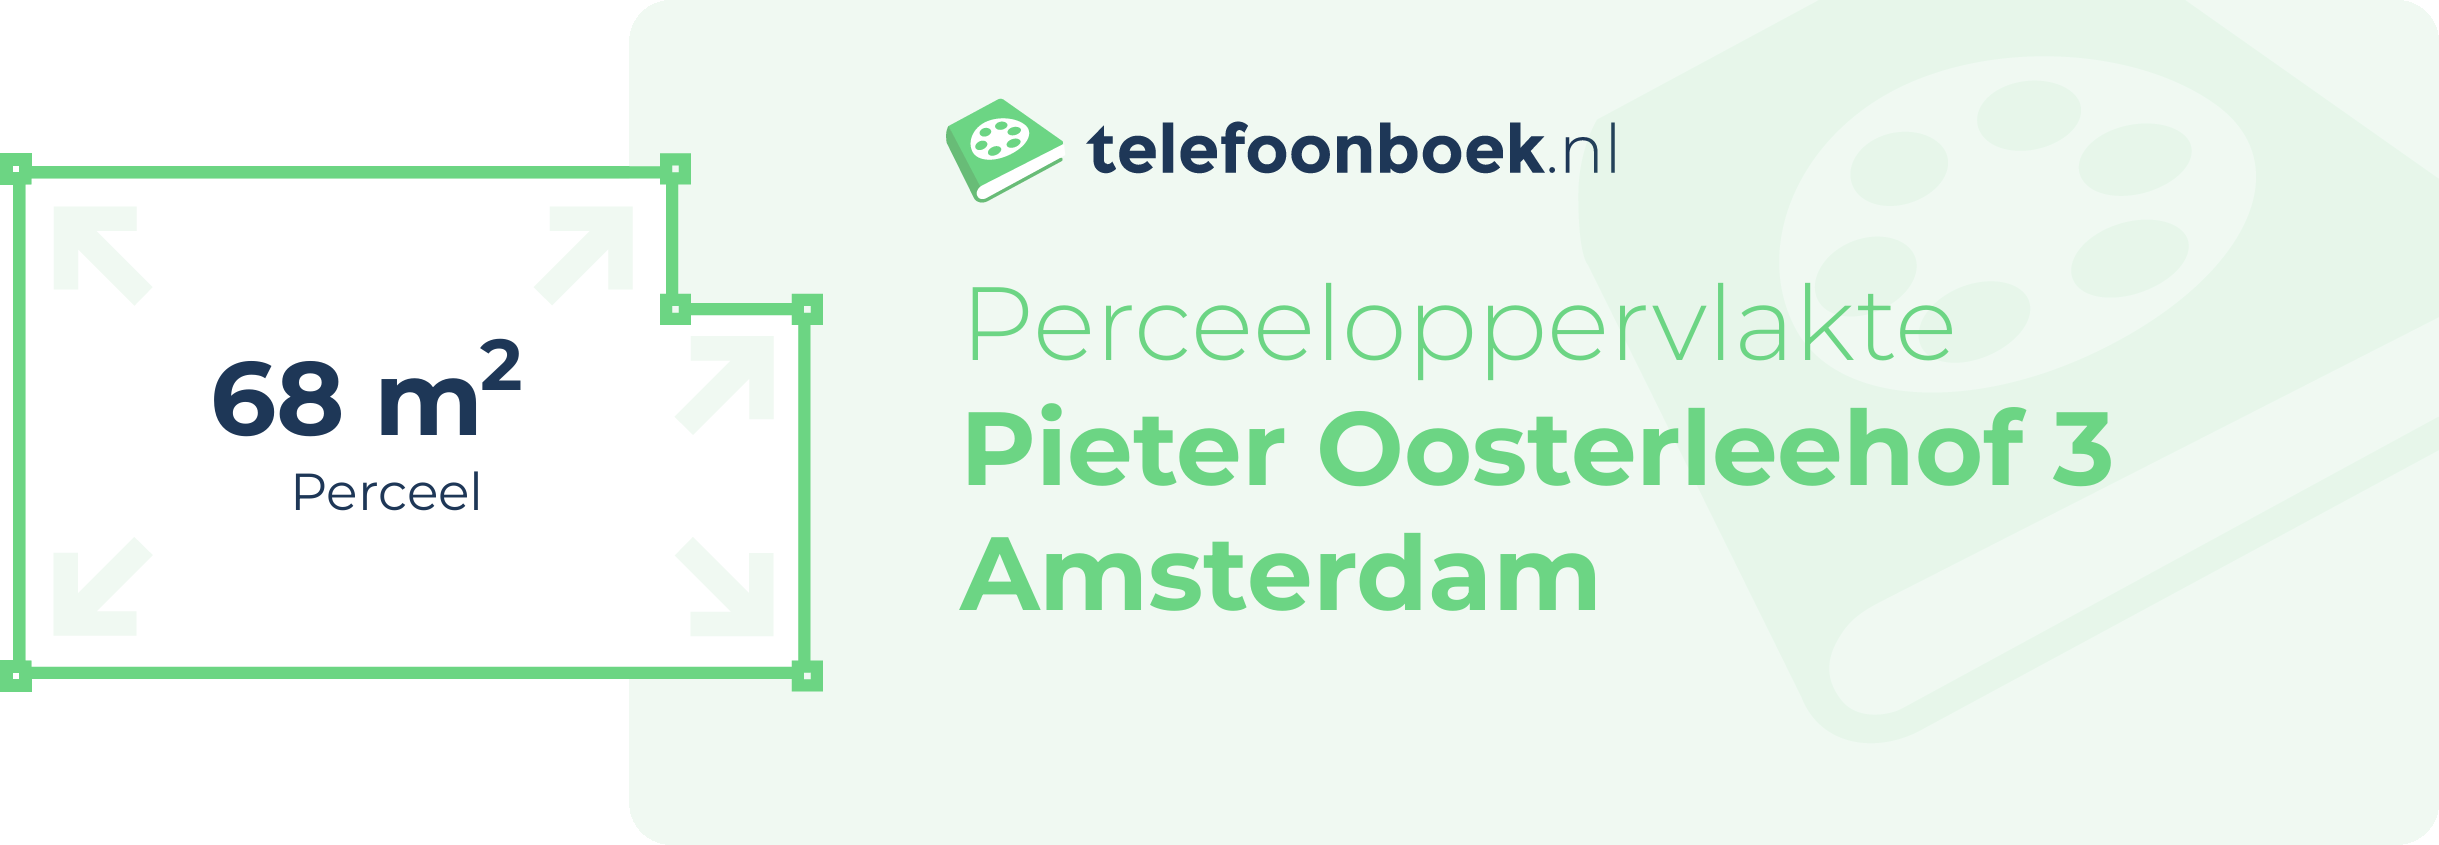 Perceeloppervlakte Pieter Oosterleehof 3 Amsterdam